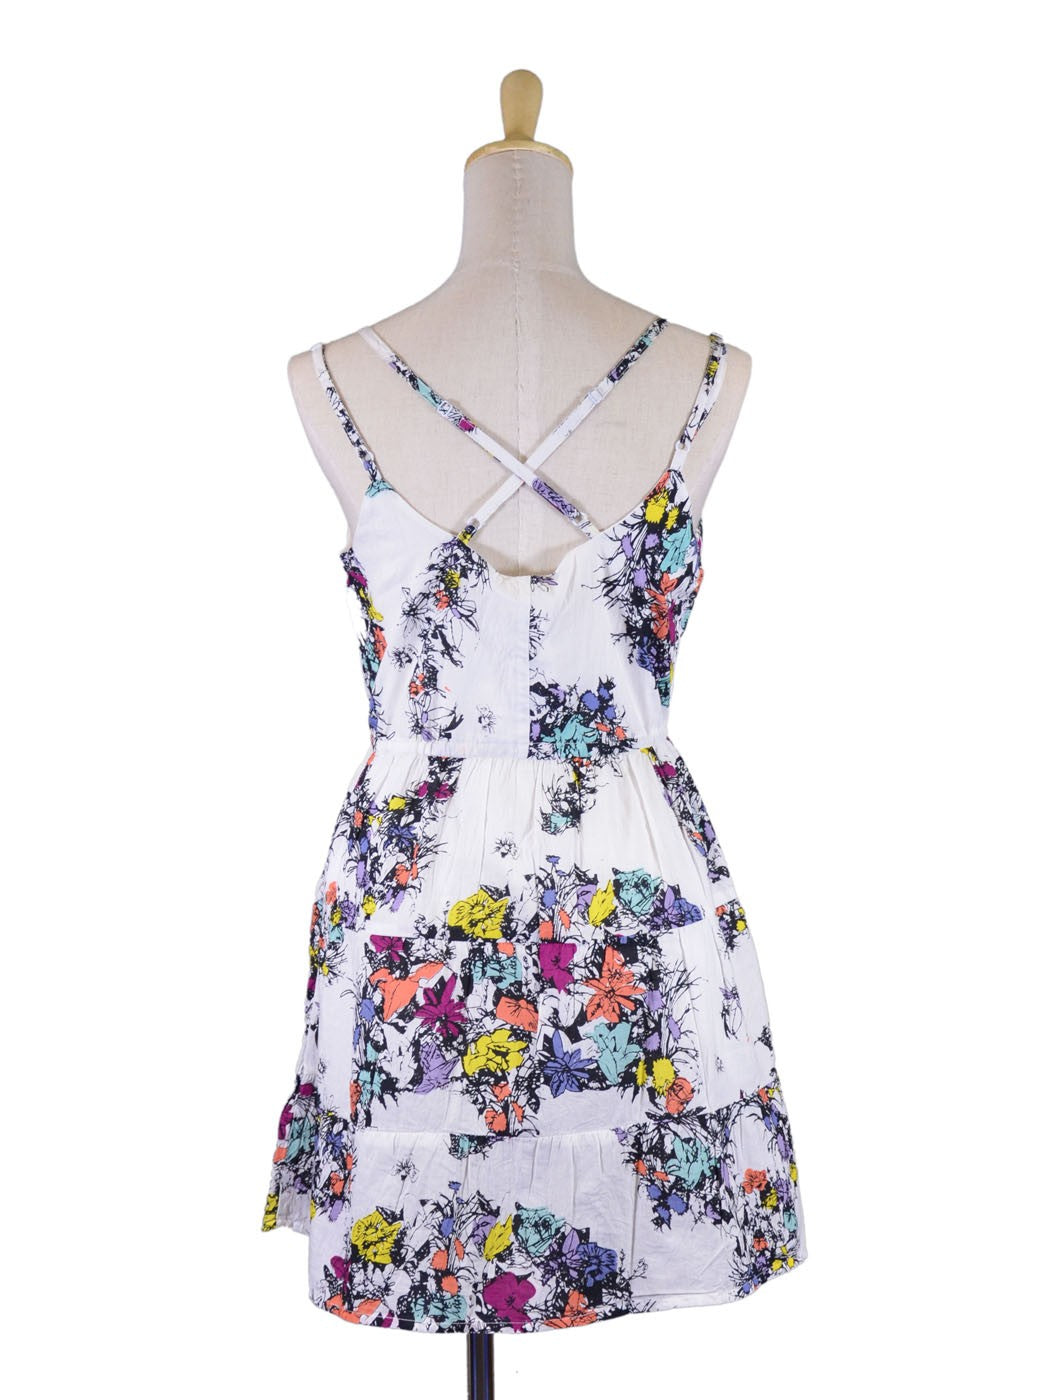 En Creme Adorable Colorful Floral Prints Double Straps Tie Waist Babydoll Dress